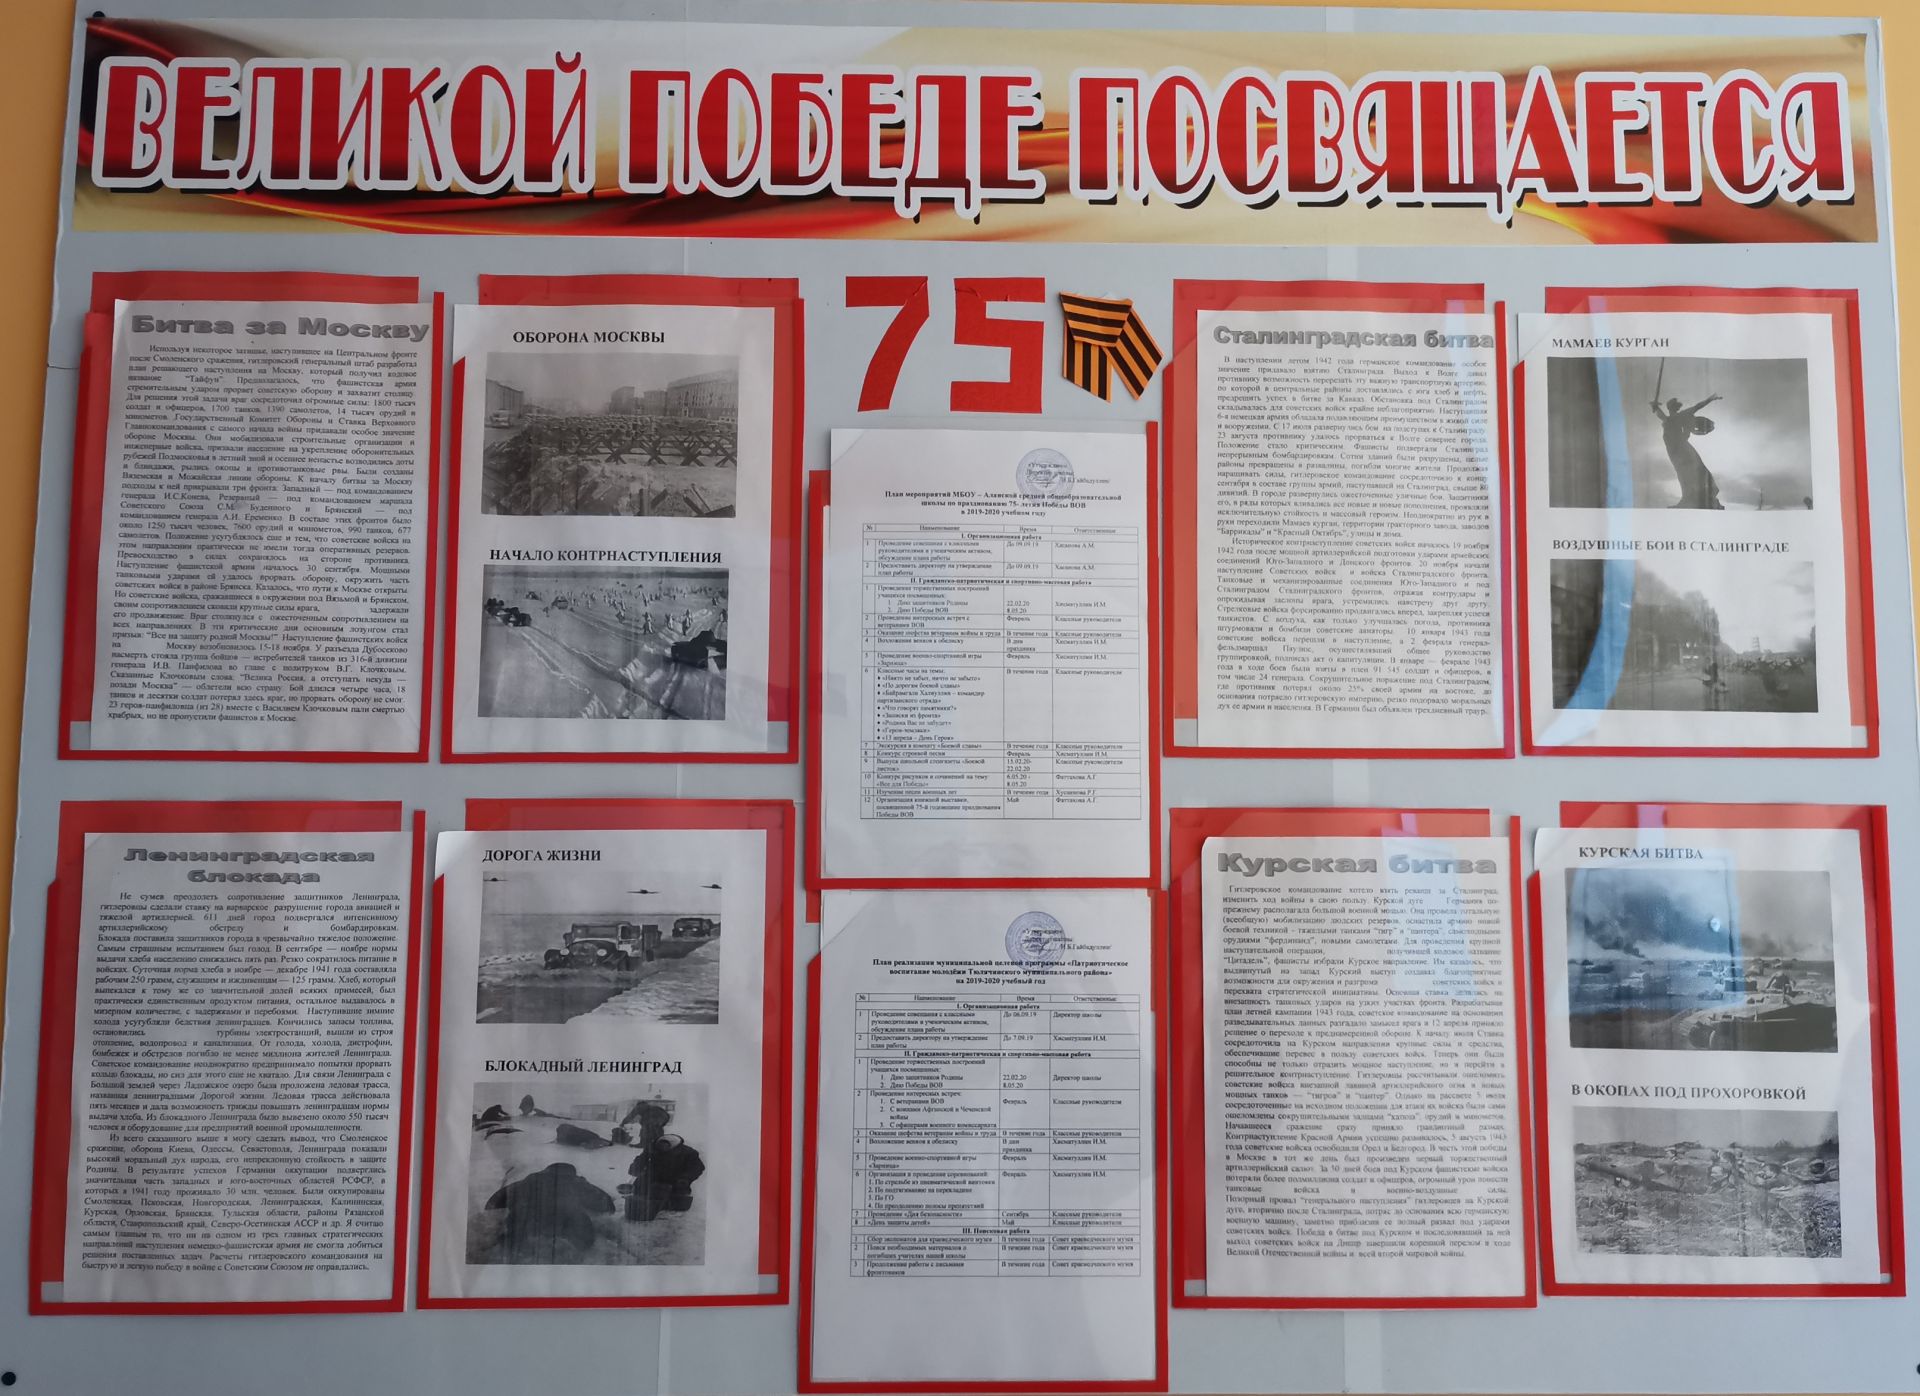 Тәрбия чаралары Җиңүнең 75, ТАССРның 100 еллыгына багышлана